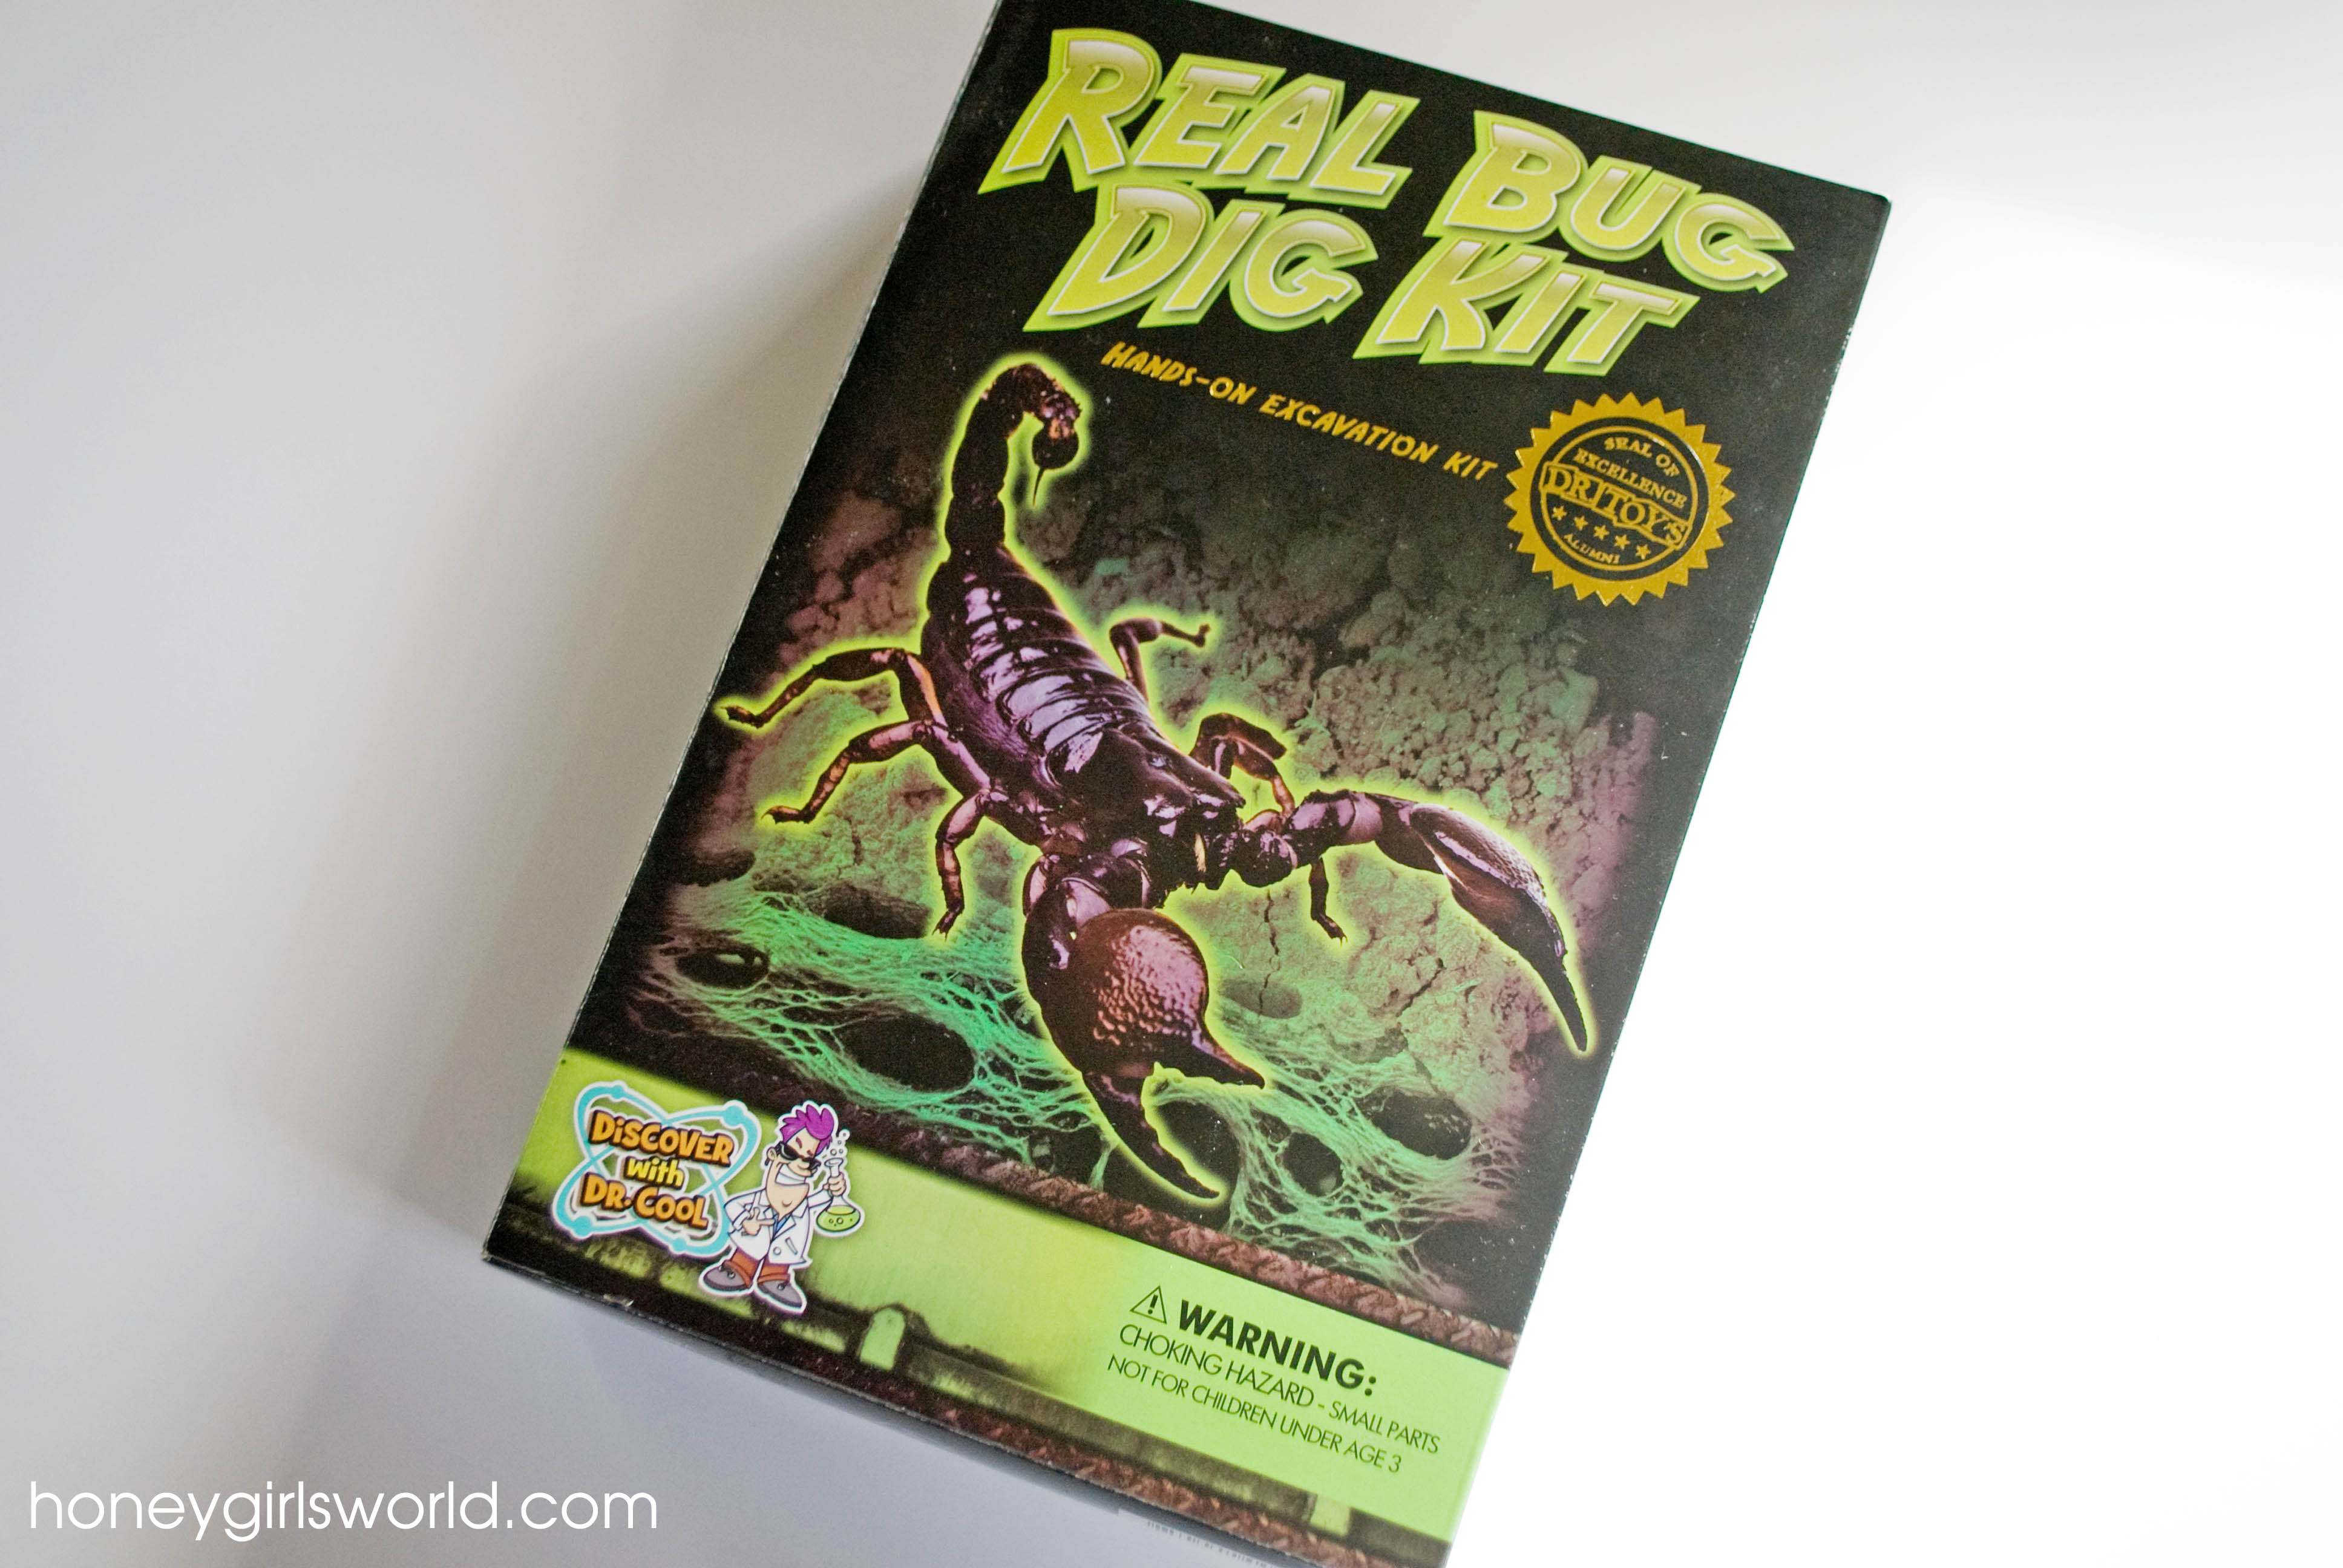 Real Bug Dig Kit